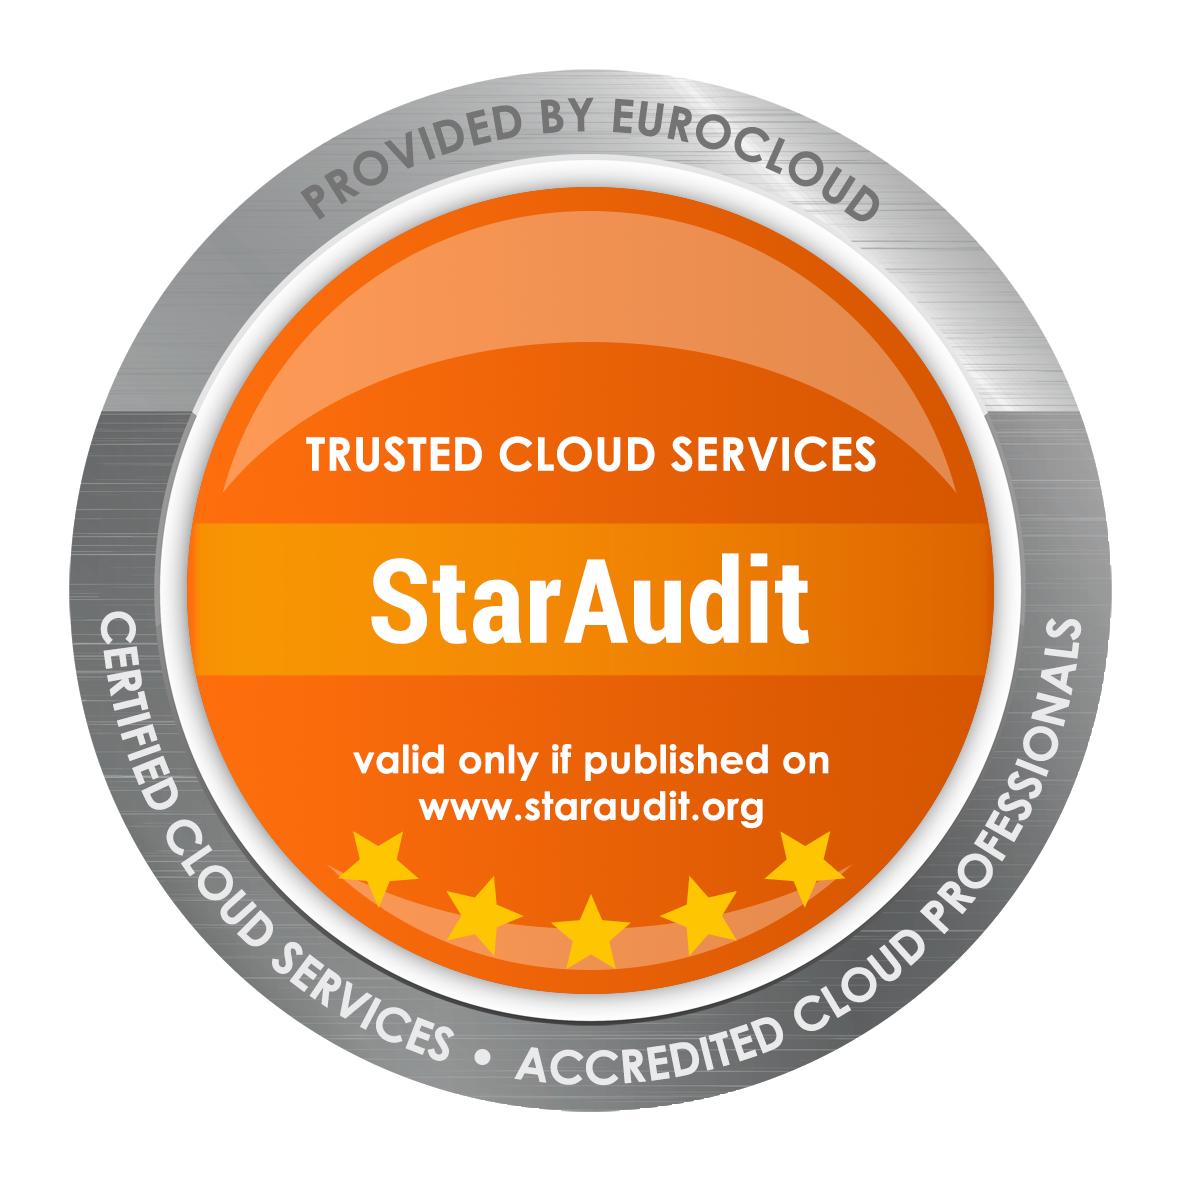 Vorbereitung auf Cloud-Anbieter-Zertifizierung Eurocloud Staraudit bei Digicomp